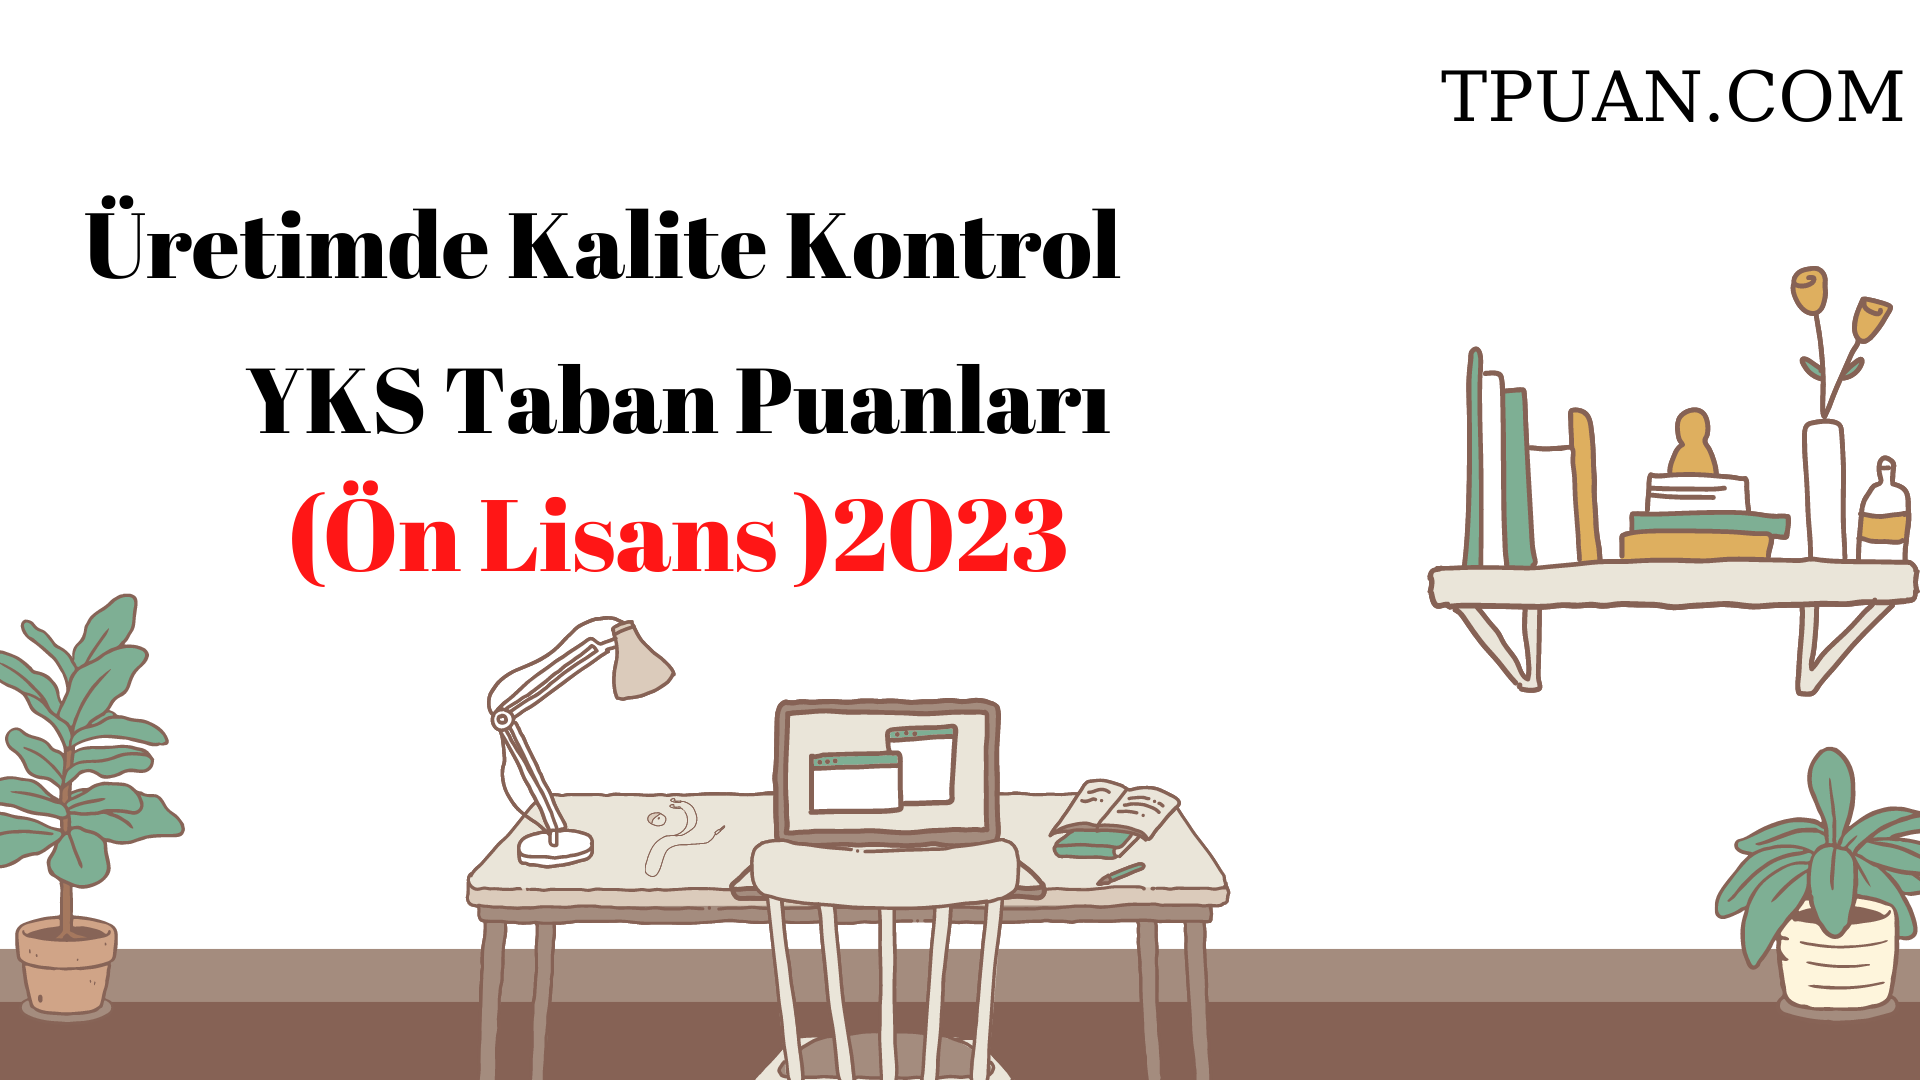  Üretimde Kalite Kontrol Bölümü YKS Taban Puanları (2 Yıllık) 2023